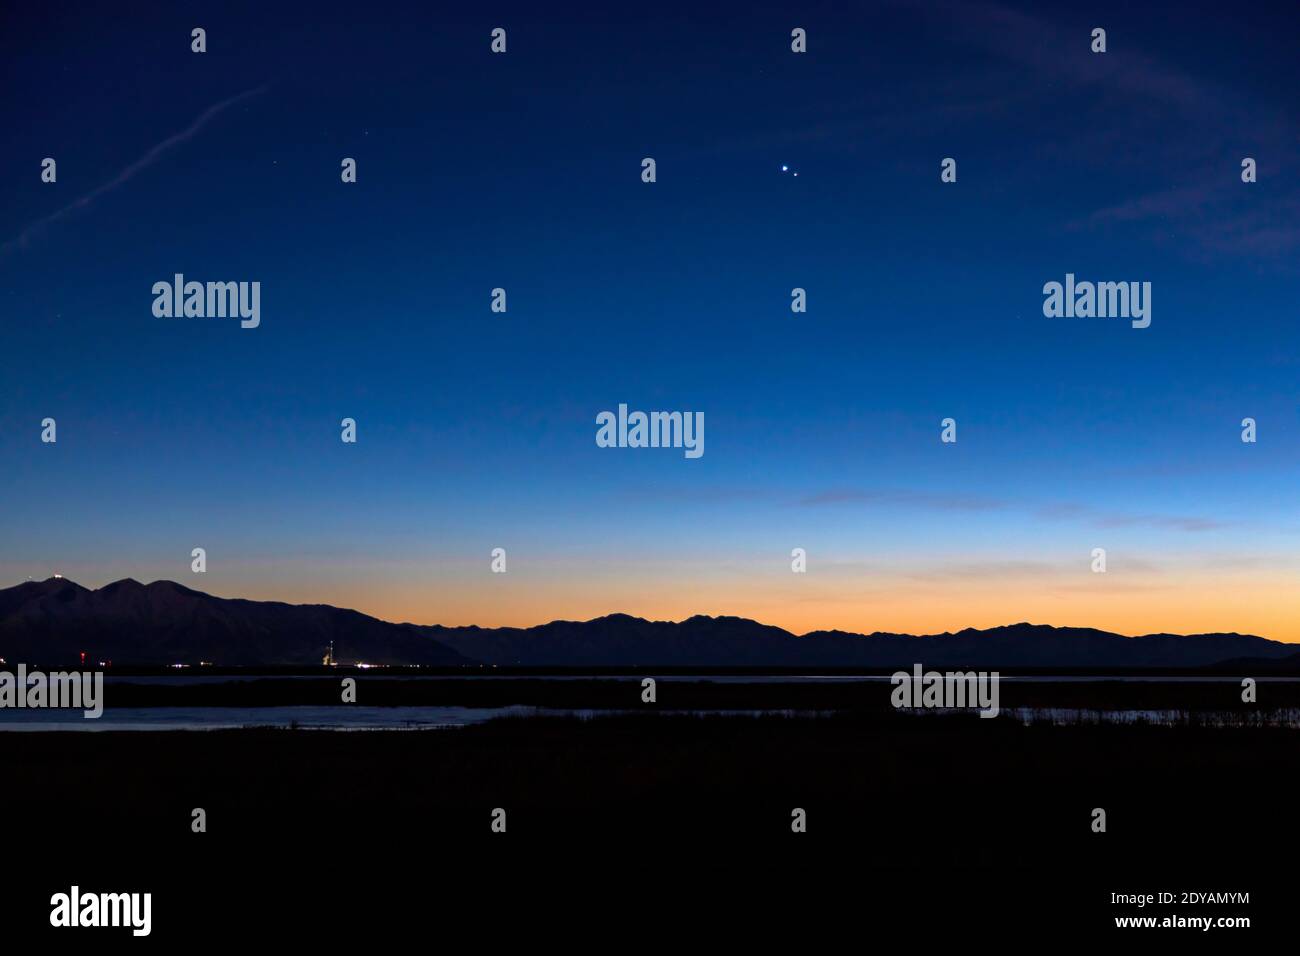 Júpiter y Saturno parecen colgar en el cielo sobre las montañas al oeste de Farmington, Utah, EE.UU. Durante la "Gran conjunción" de los planetas. Foto de stock